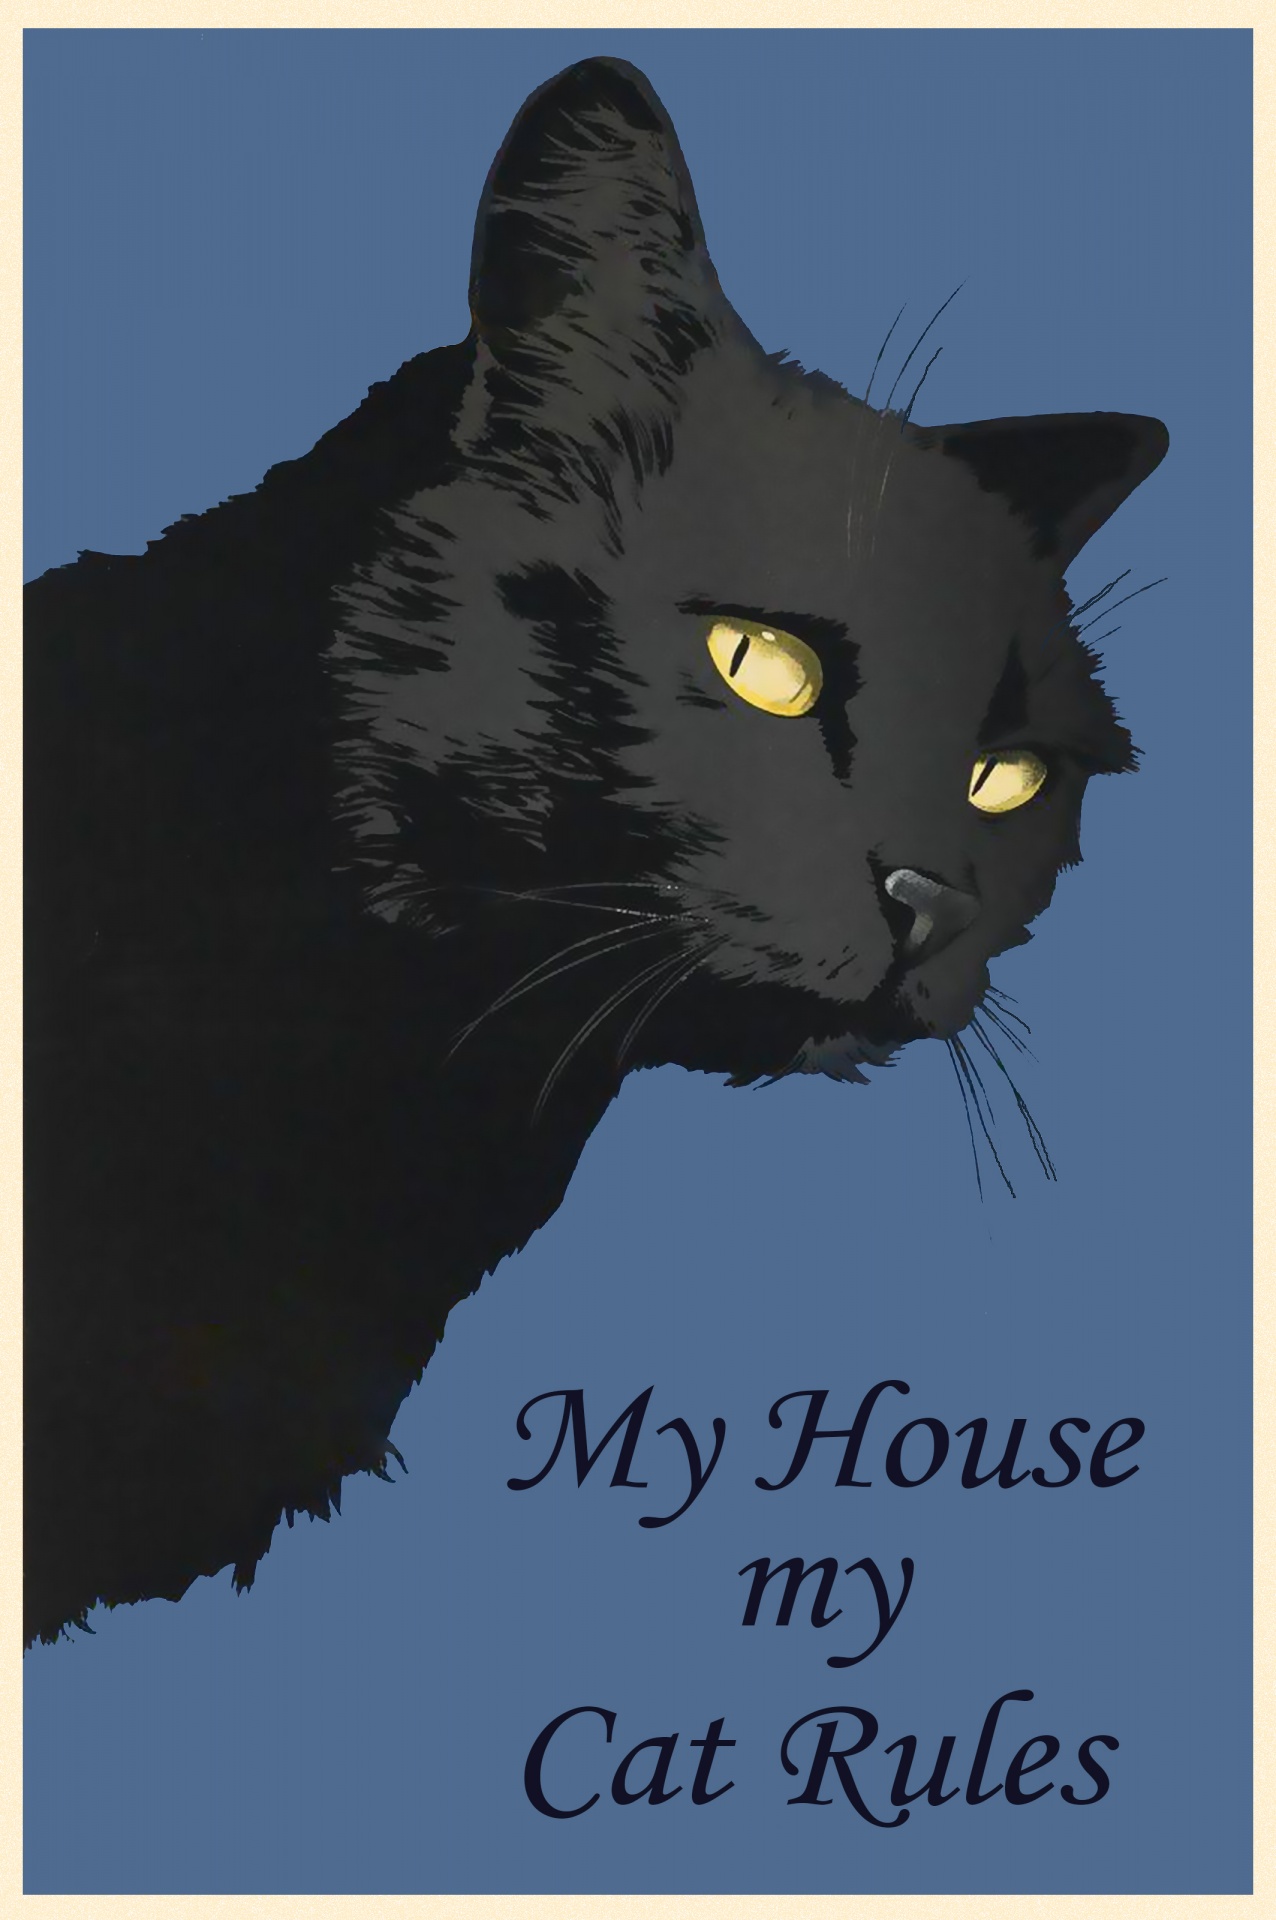 Black Cat Vintage Poster